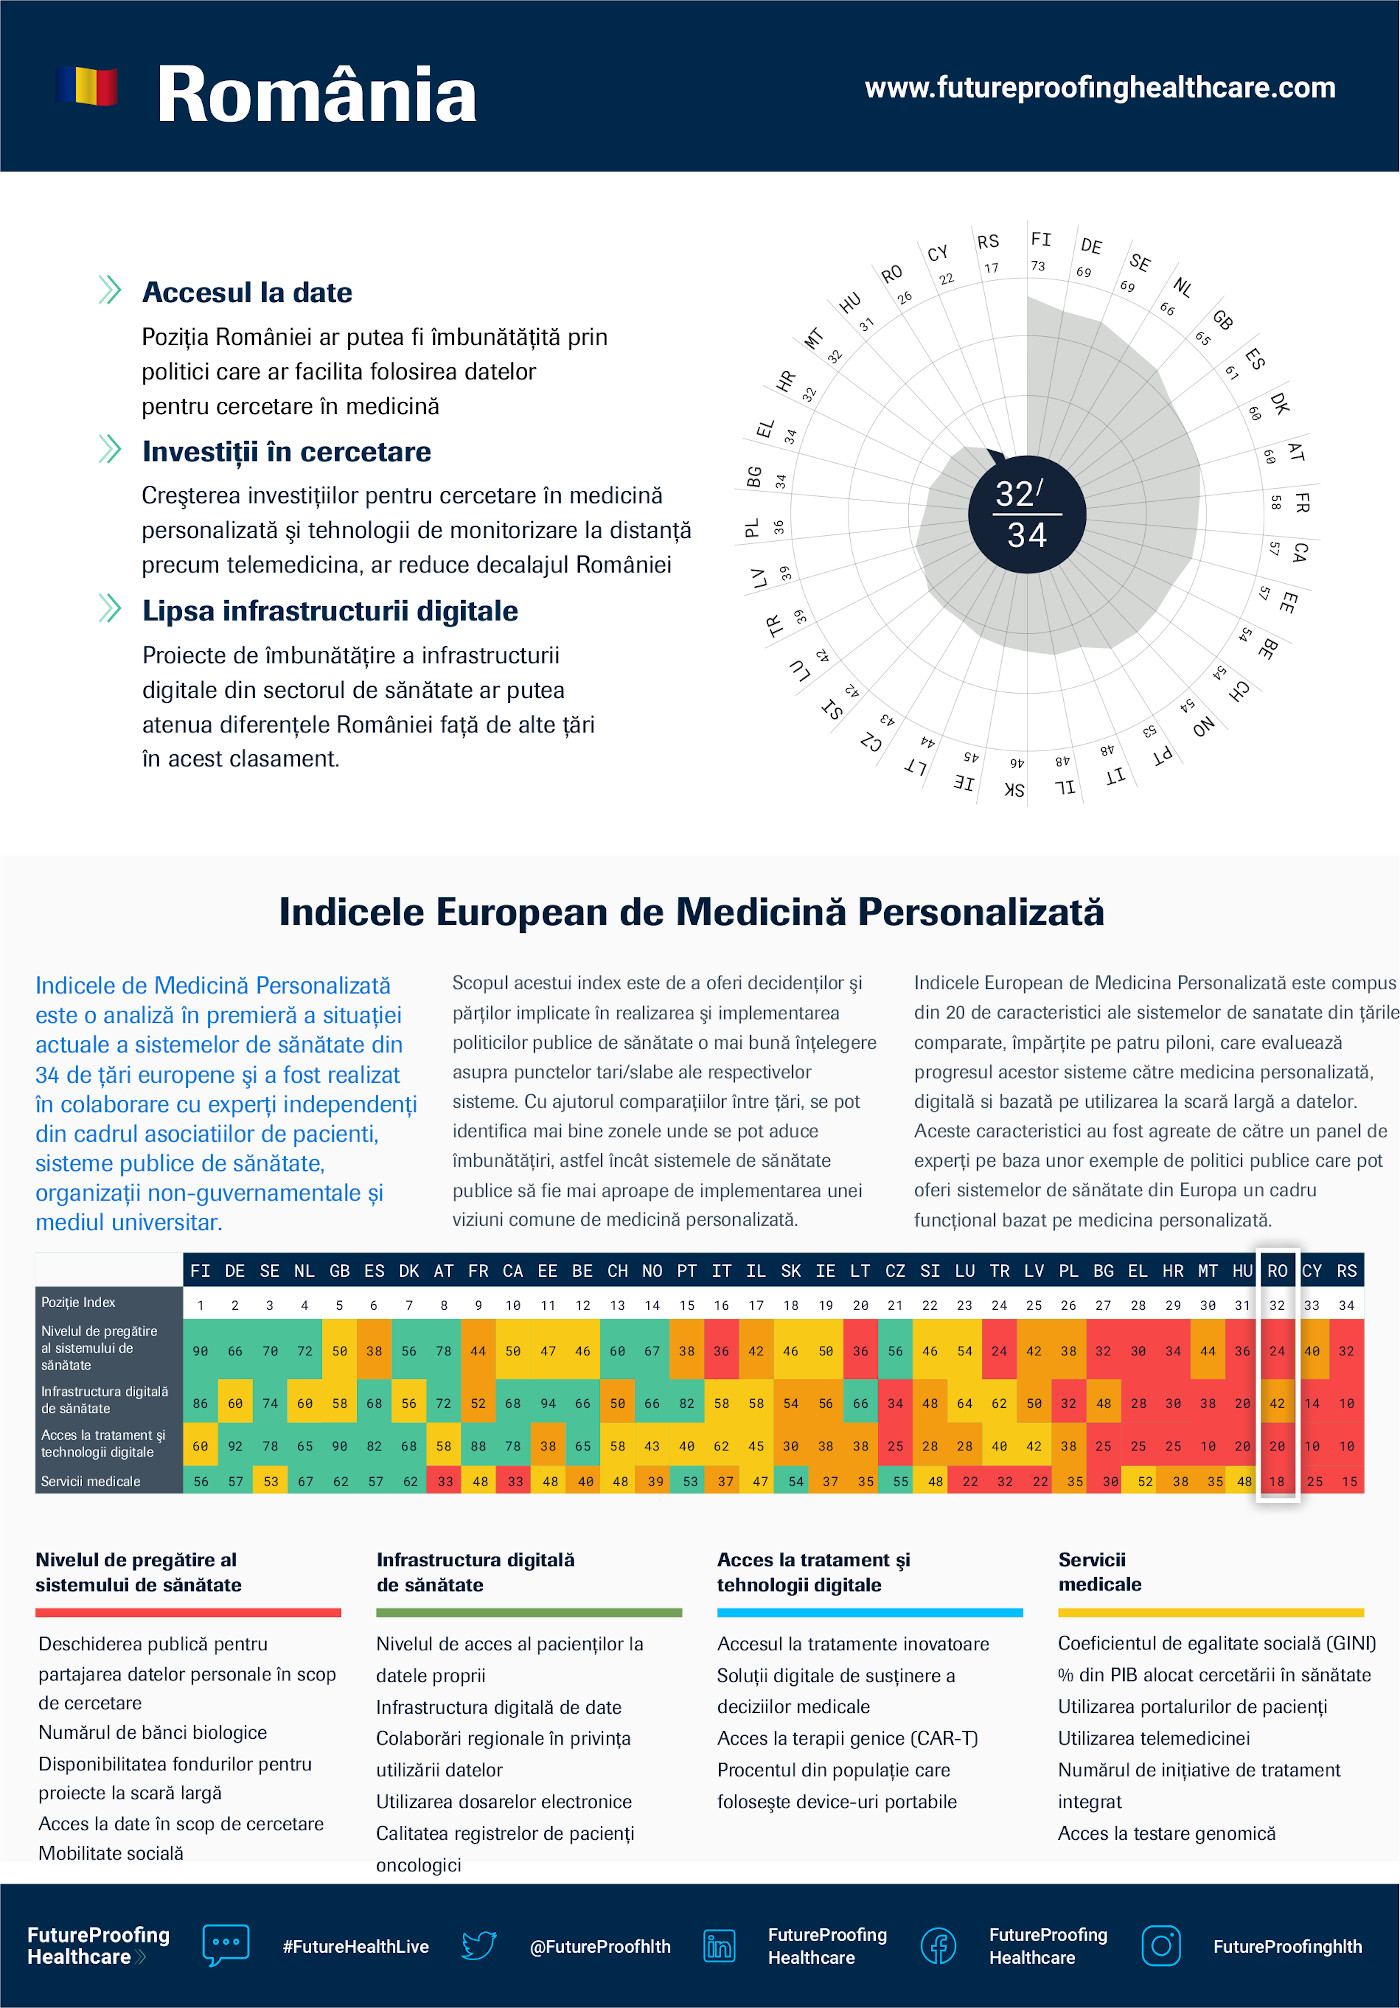 Romania factsheet_Indicele de Medicina Personalizata